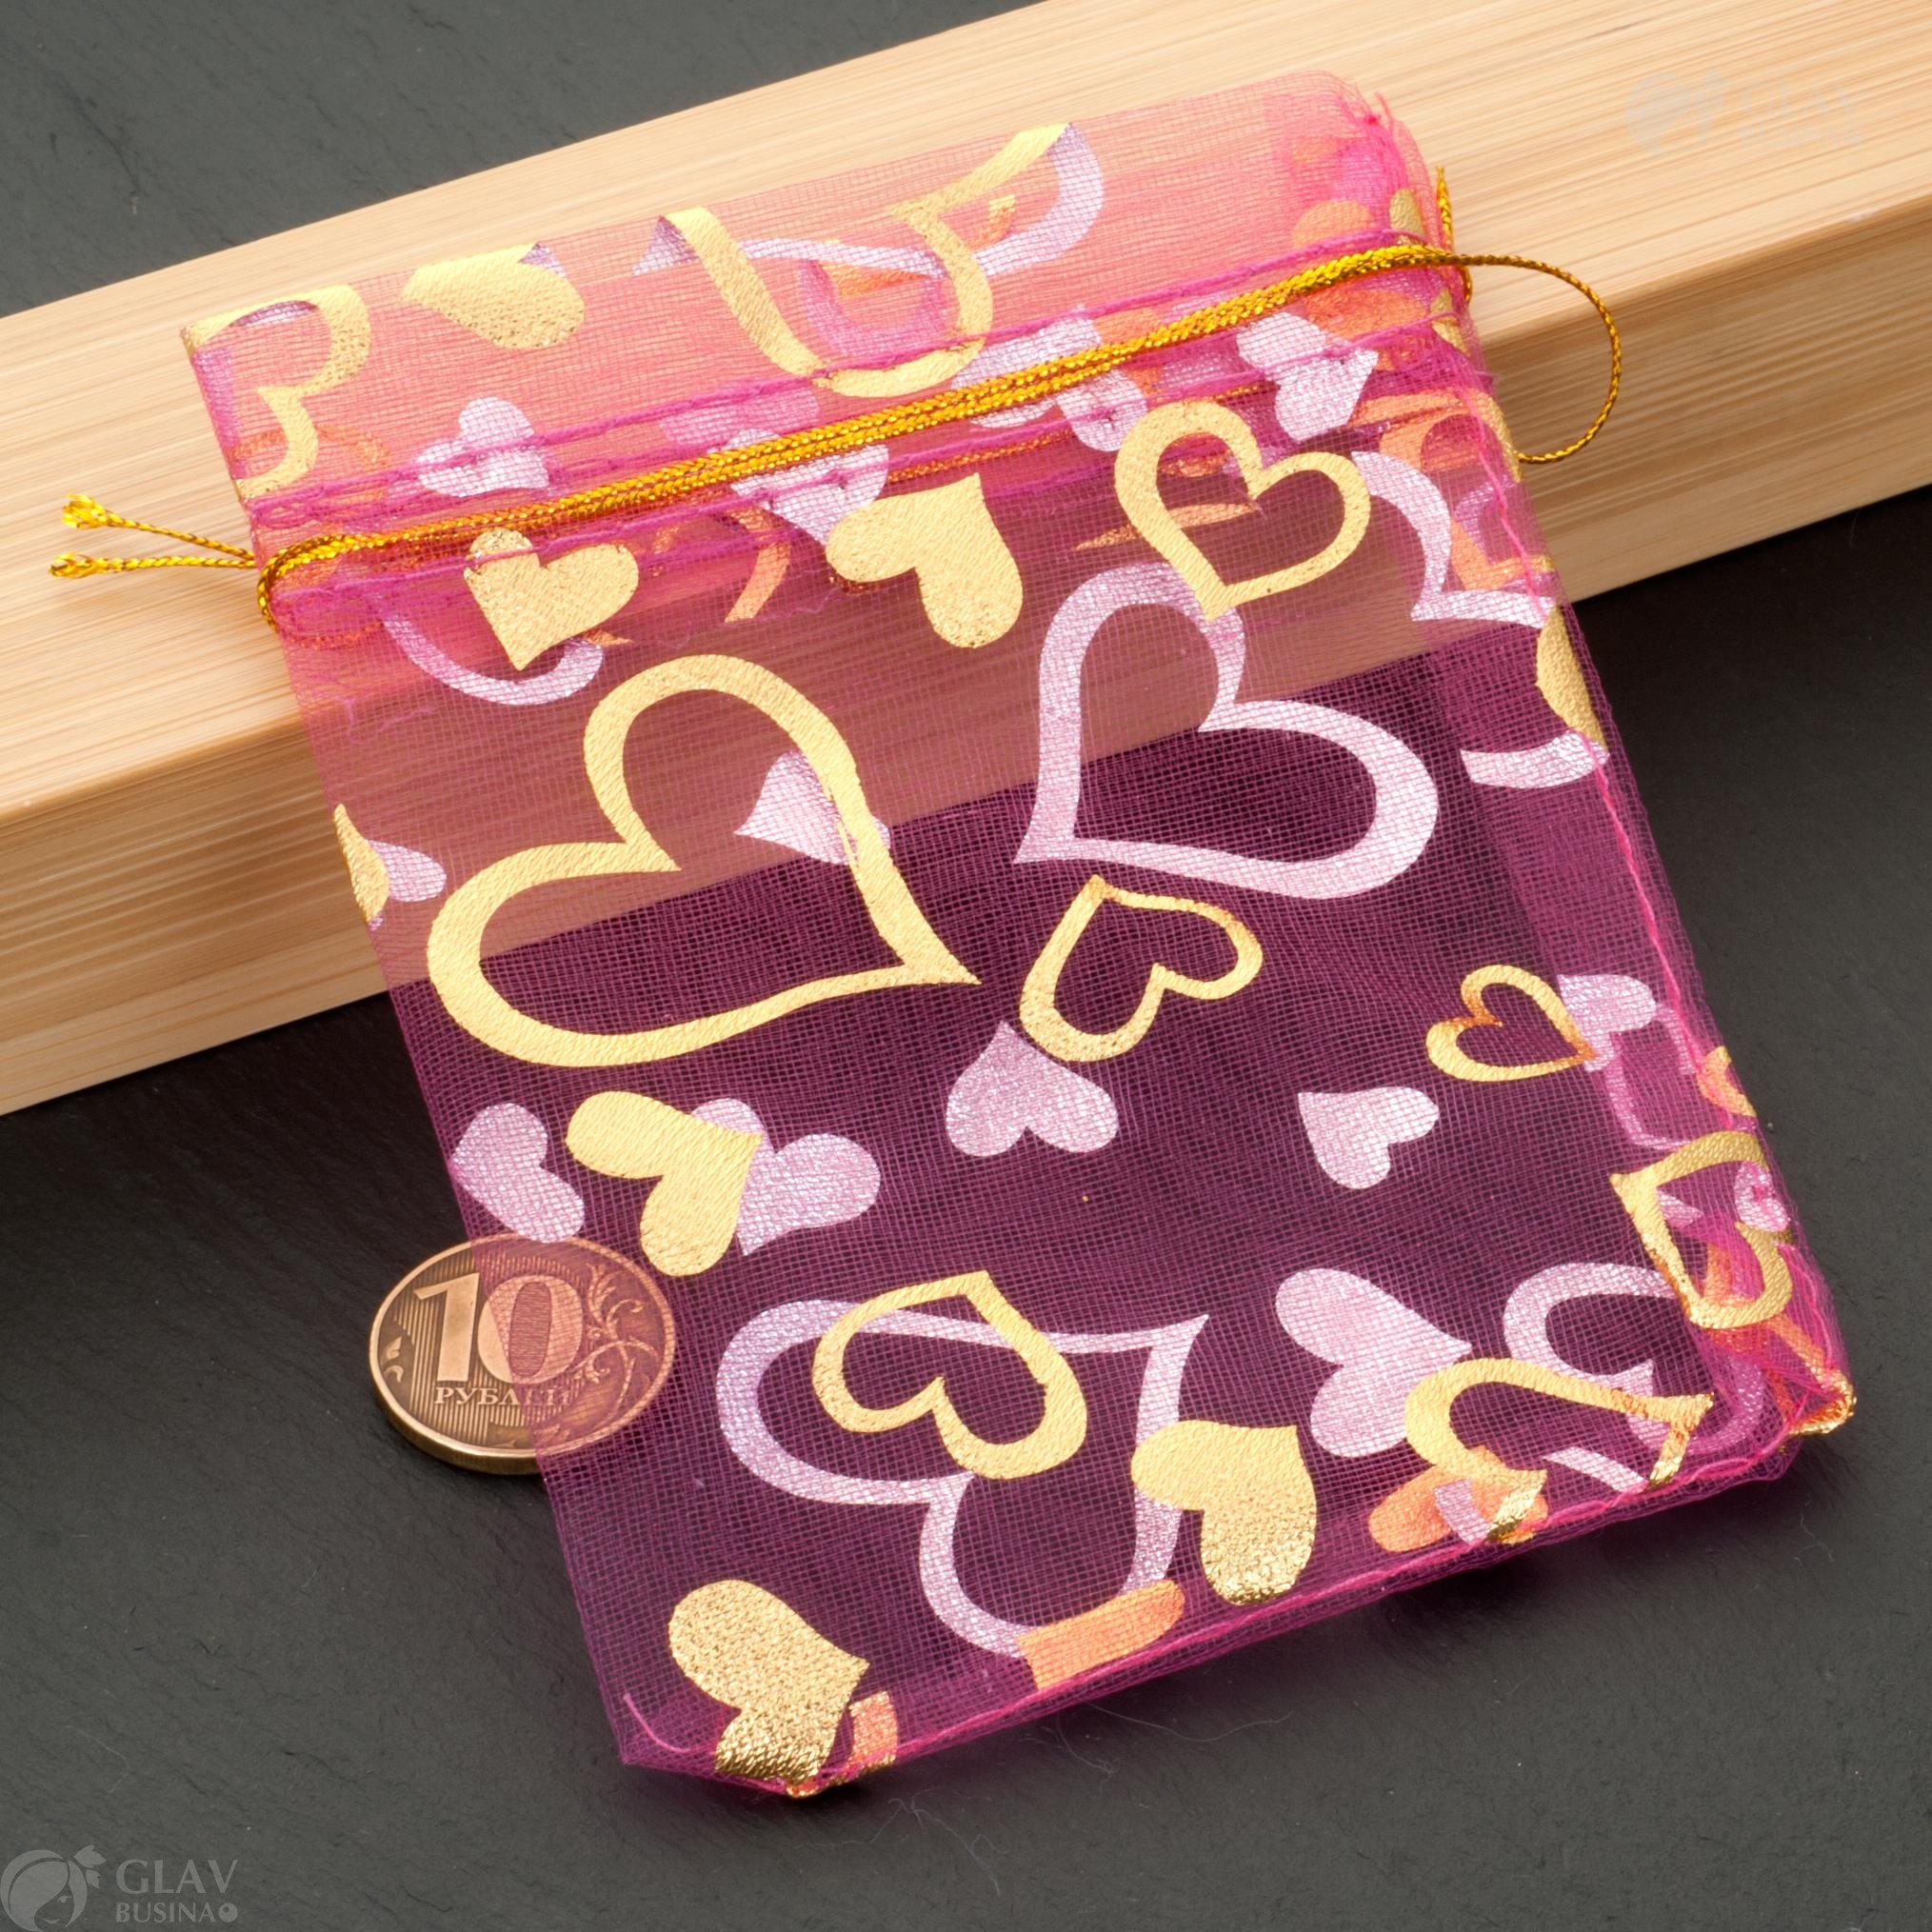 Ярко-розовые органзовые мешочки с золотыми сердечками, размером 9x12 см, идеальны для подарков или украшений.